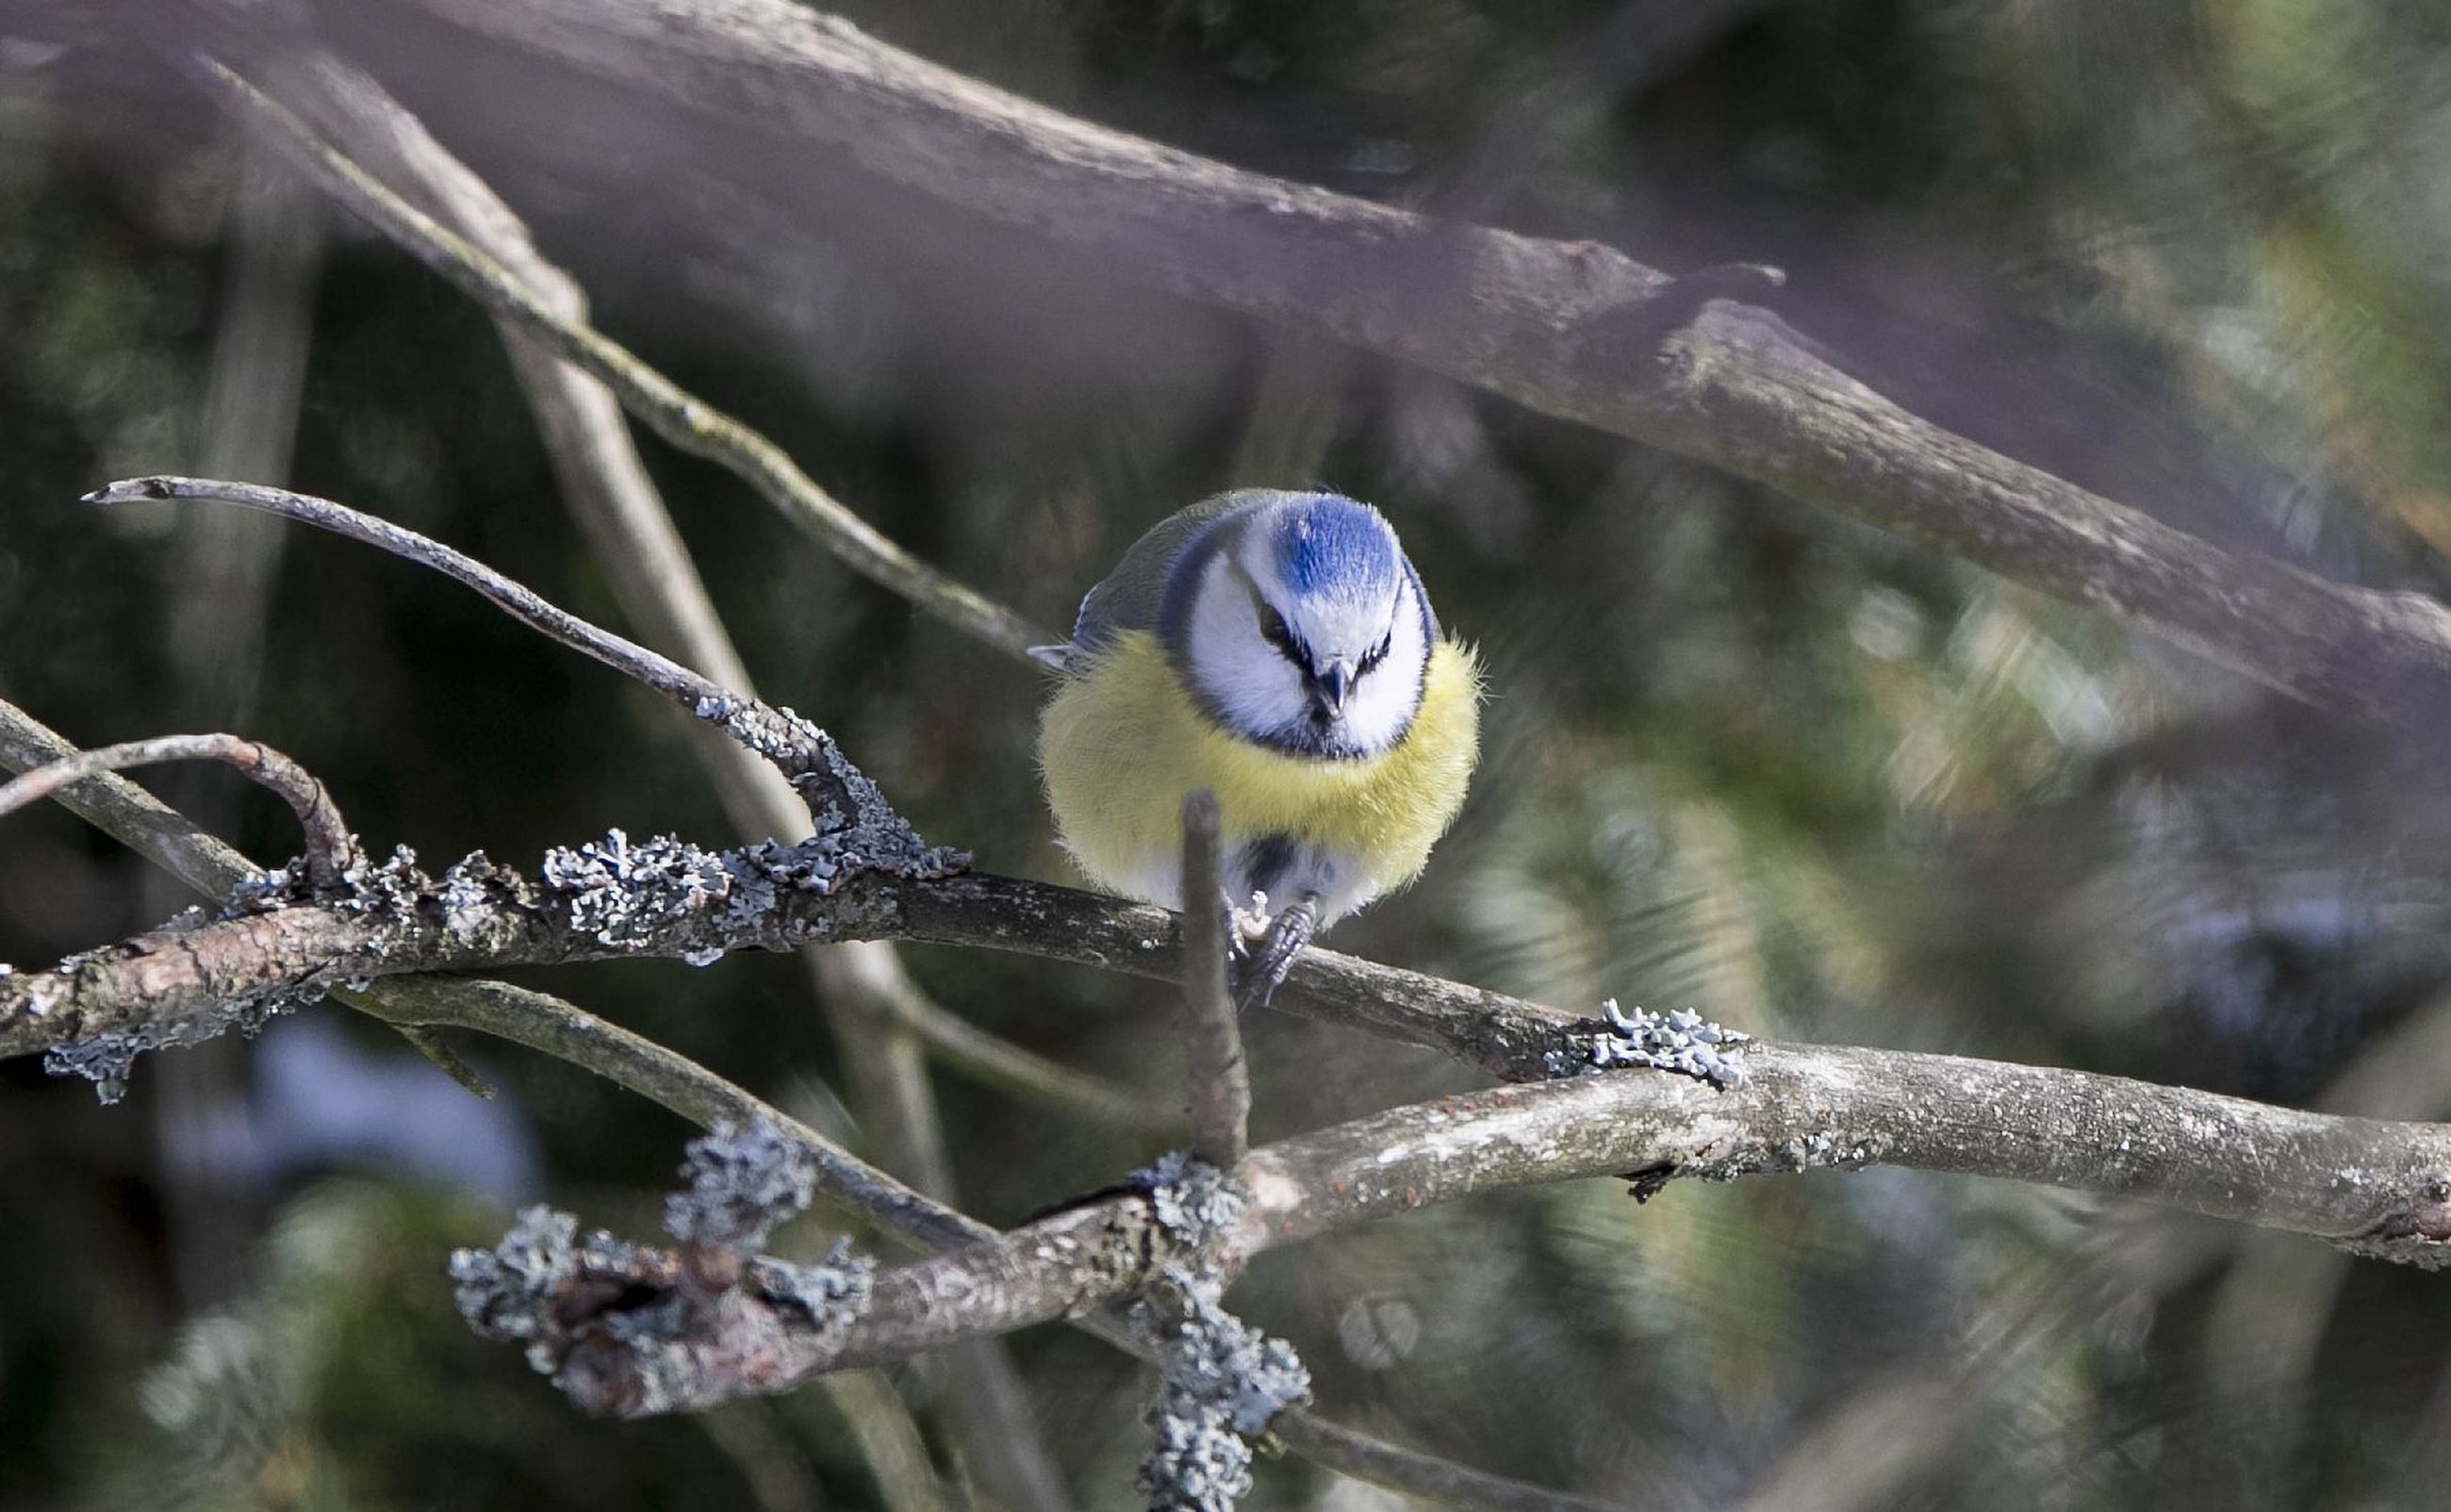 Birdlife Suomen kevättapahtumassa bongataan jälleen lintuja omilta pihoilta  | Kaleva